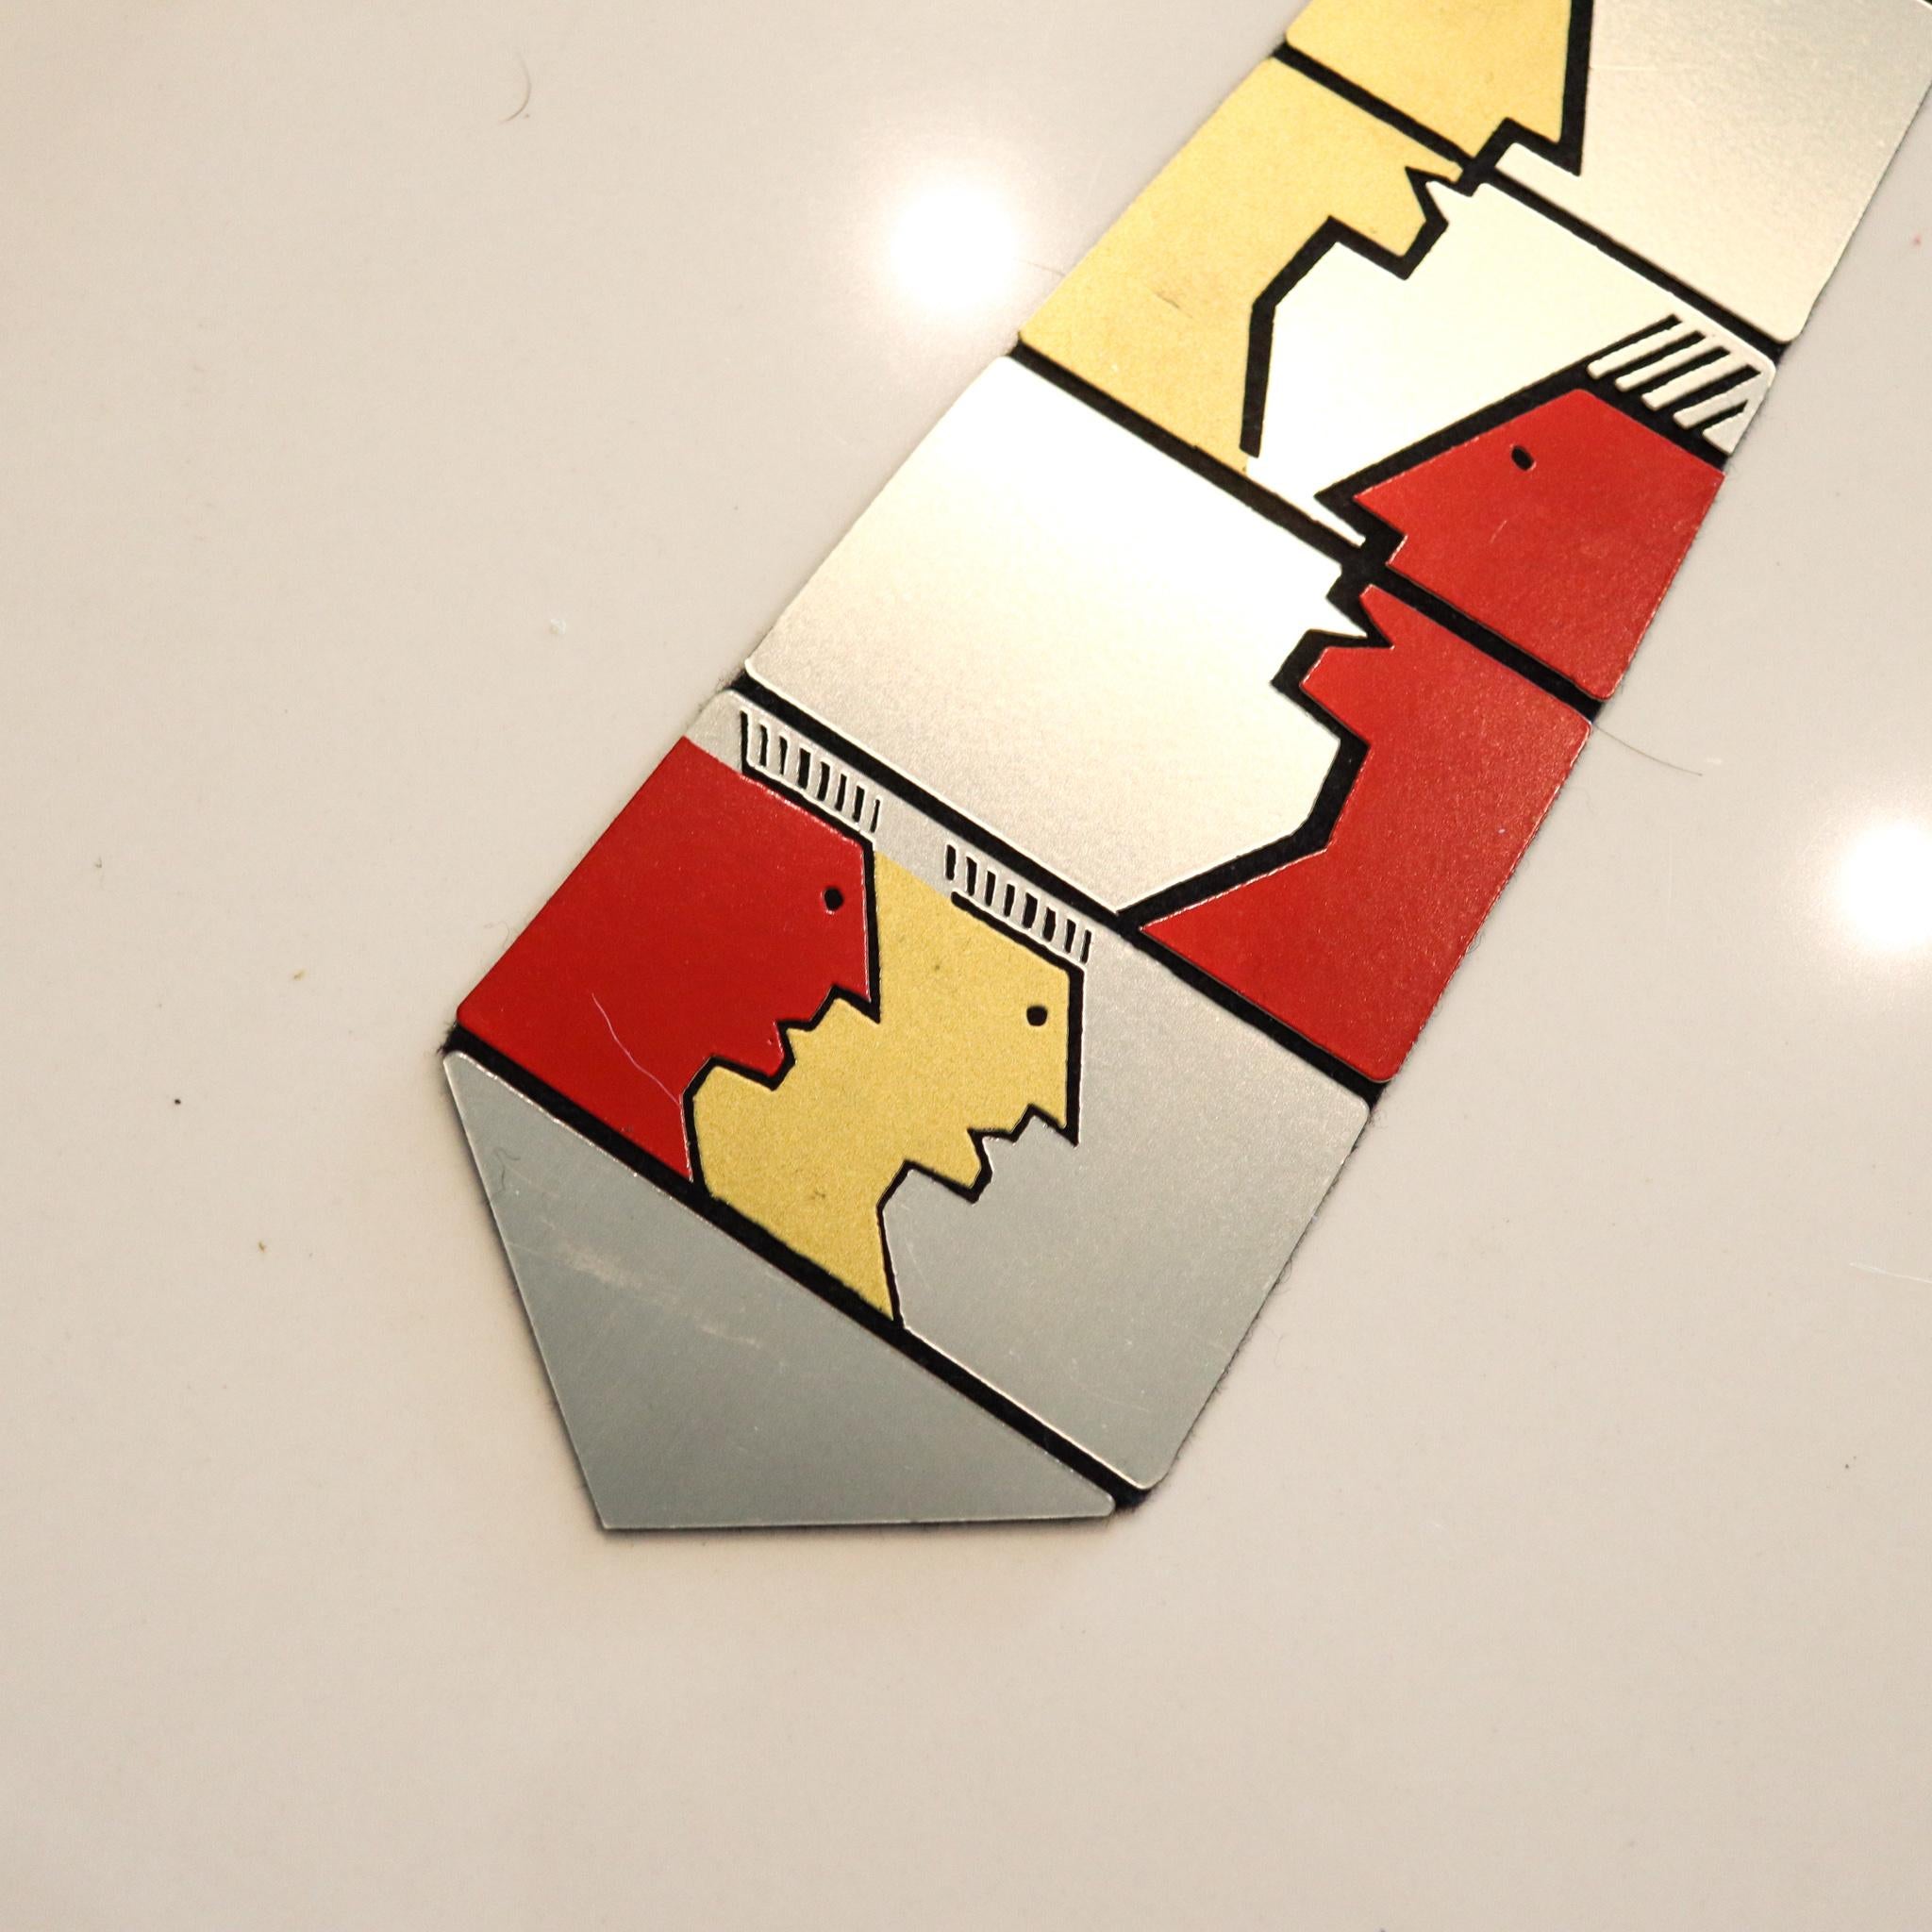 Cravate d'art métallique conçue par Pierre Cardin.

Cravate métallique très rare, créée à Paris en France par le couturier Pierre Cardin, dans les années 1970. Il s'agit d'une œuvre d'art composée de neuf pièces articulées en acier inoxydable et